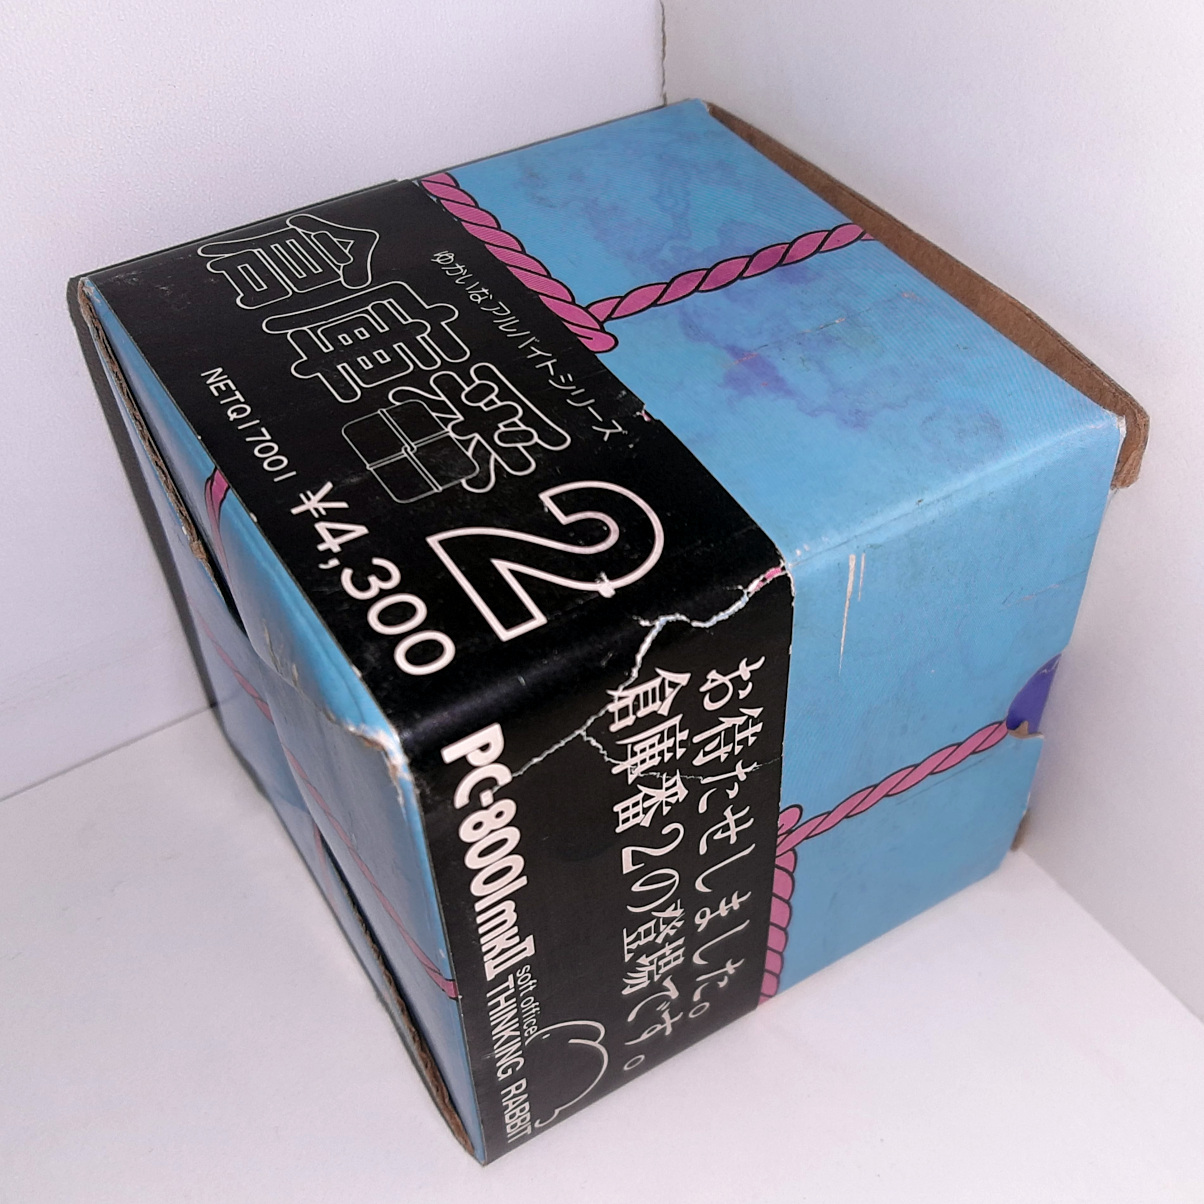 Sokoban 2 (PC-8001mkII) box package